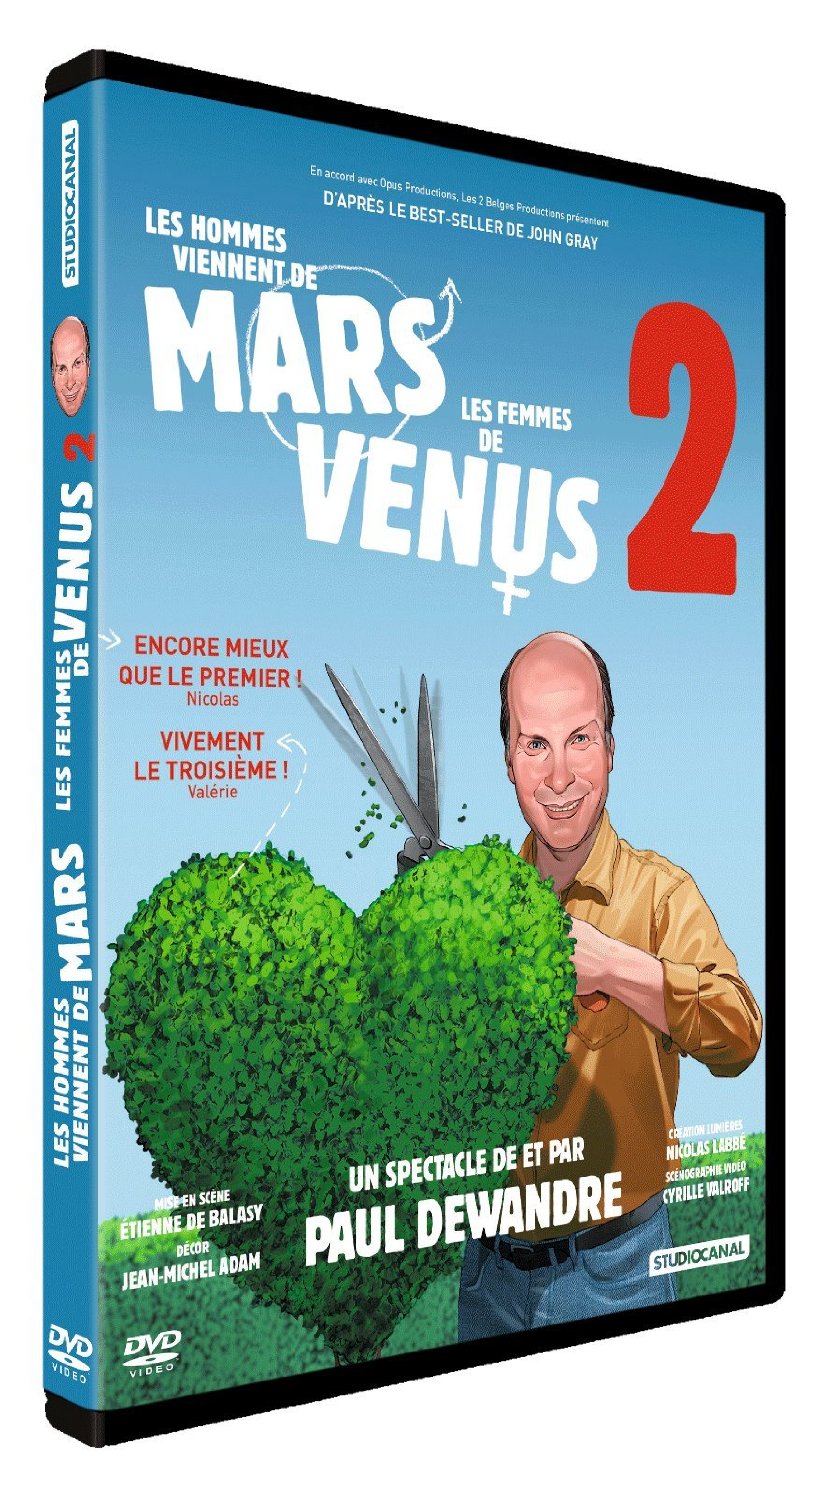 LES HOMMES VIENNENT DE MARS, LES FEMMES DE VENUS-DVD-VOL.2 - SPECTACLE, ONE MAN SHOW